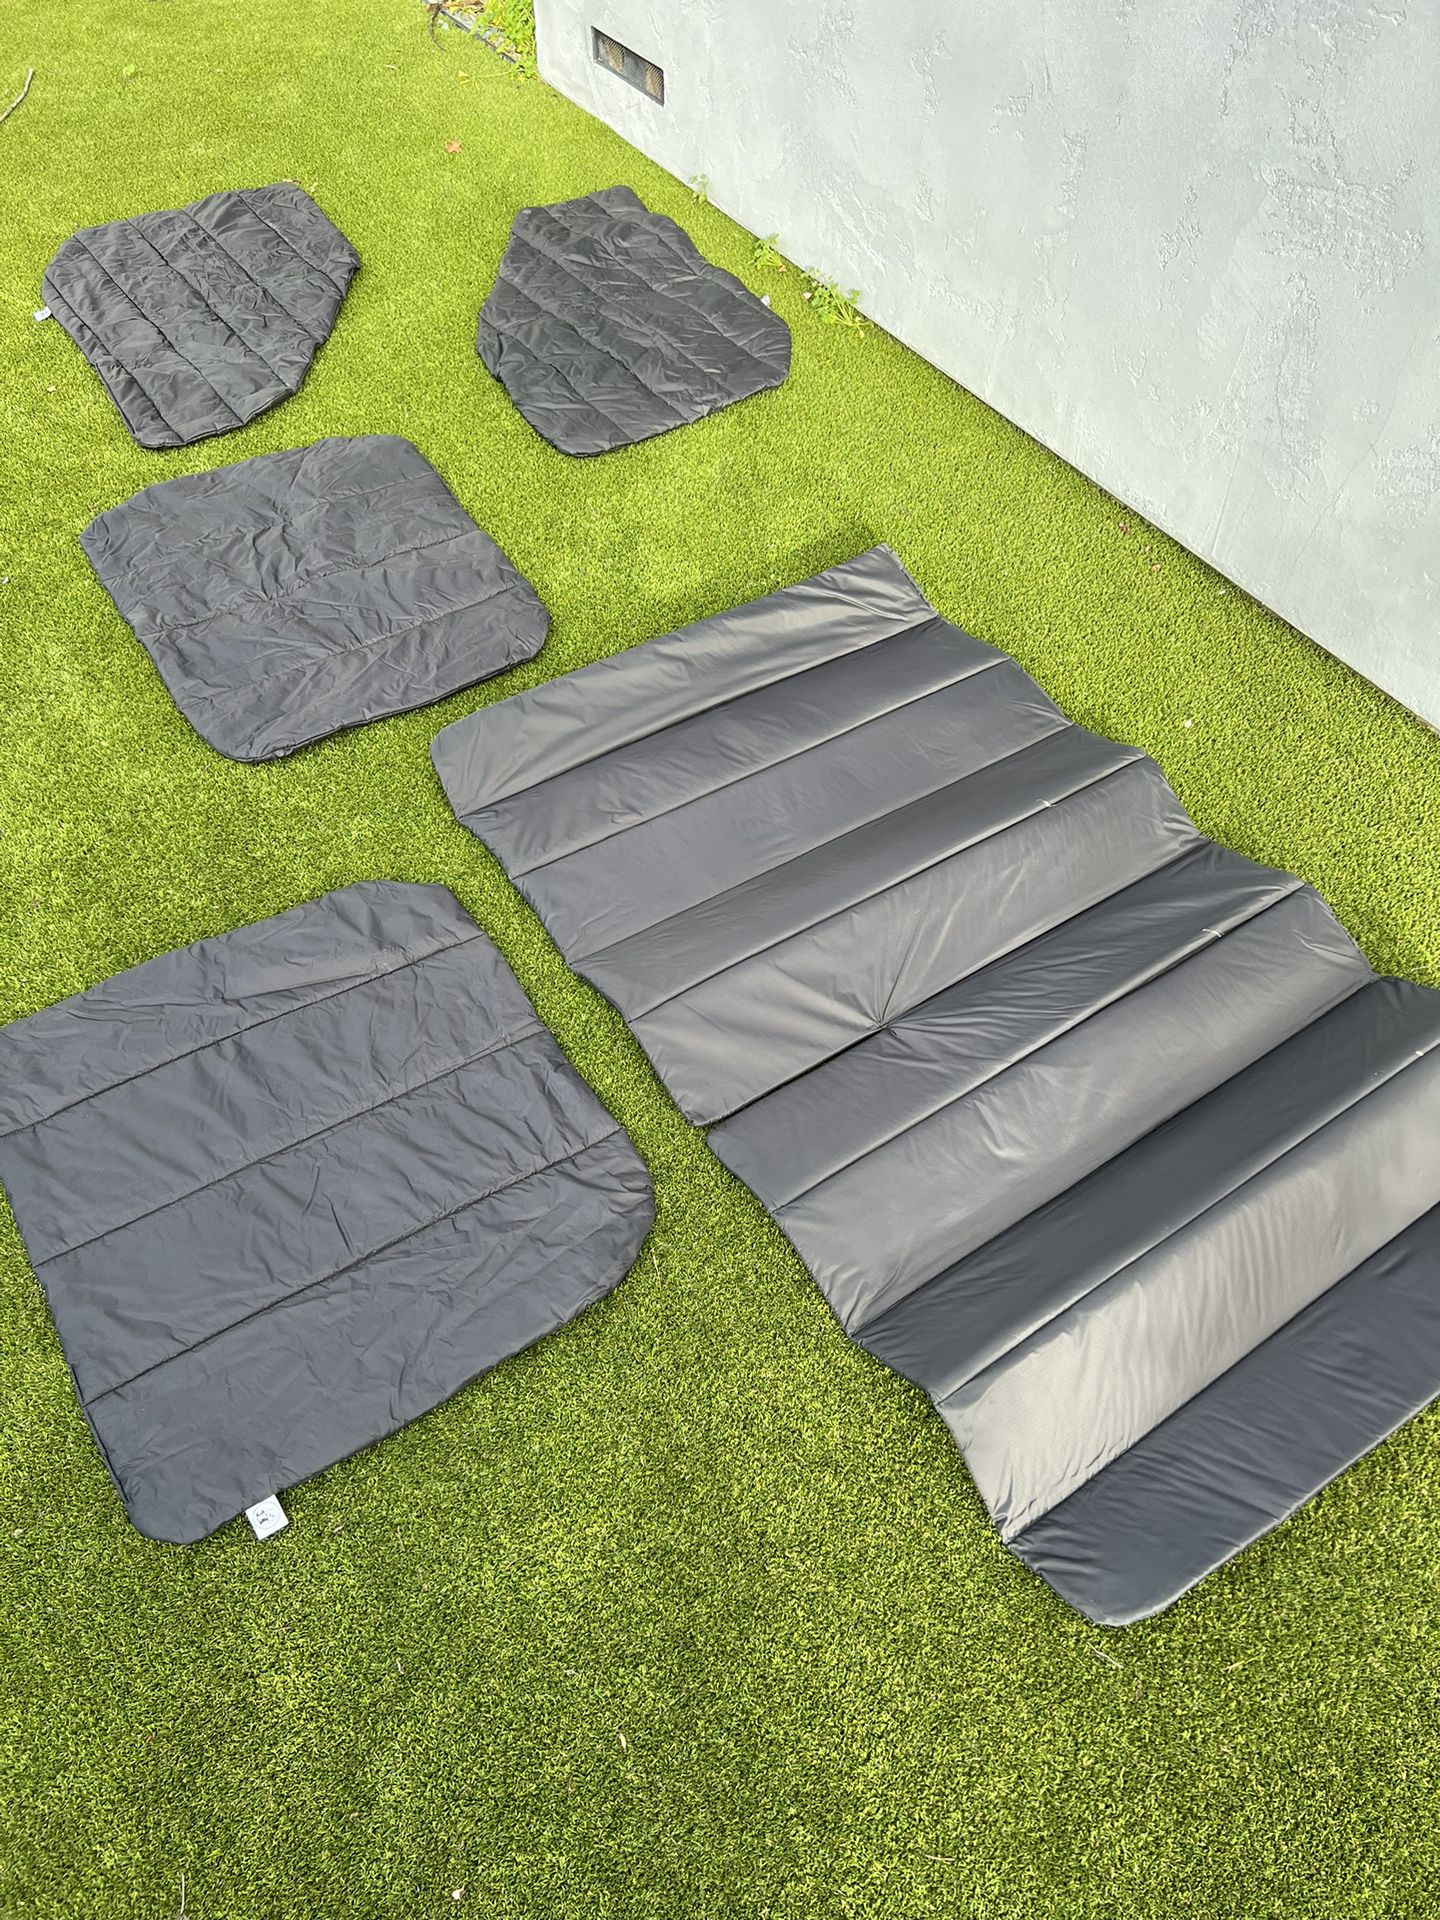 Camper Van Insulation Covers